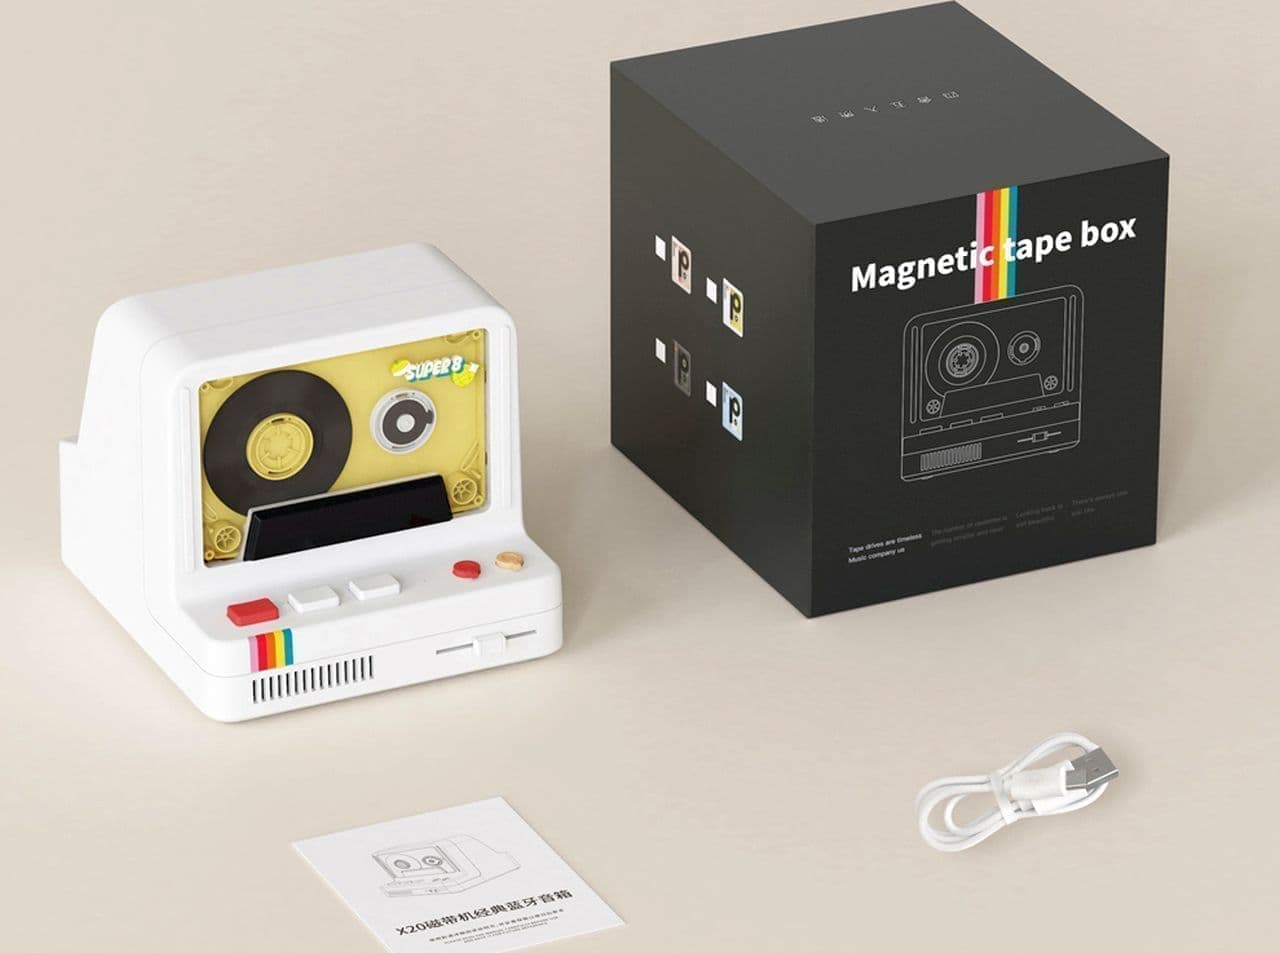  ポラロイドカメラ型でカセットテープがデザインされたBluetoothスピーカー「Magnetic tape box」